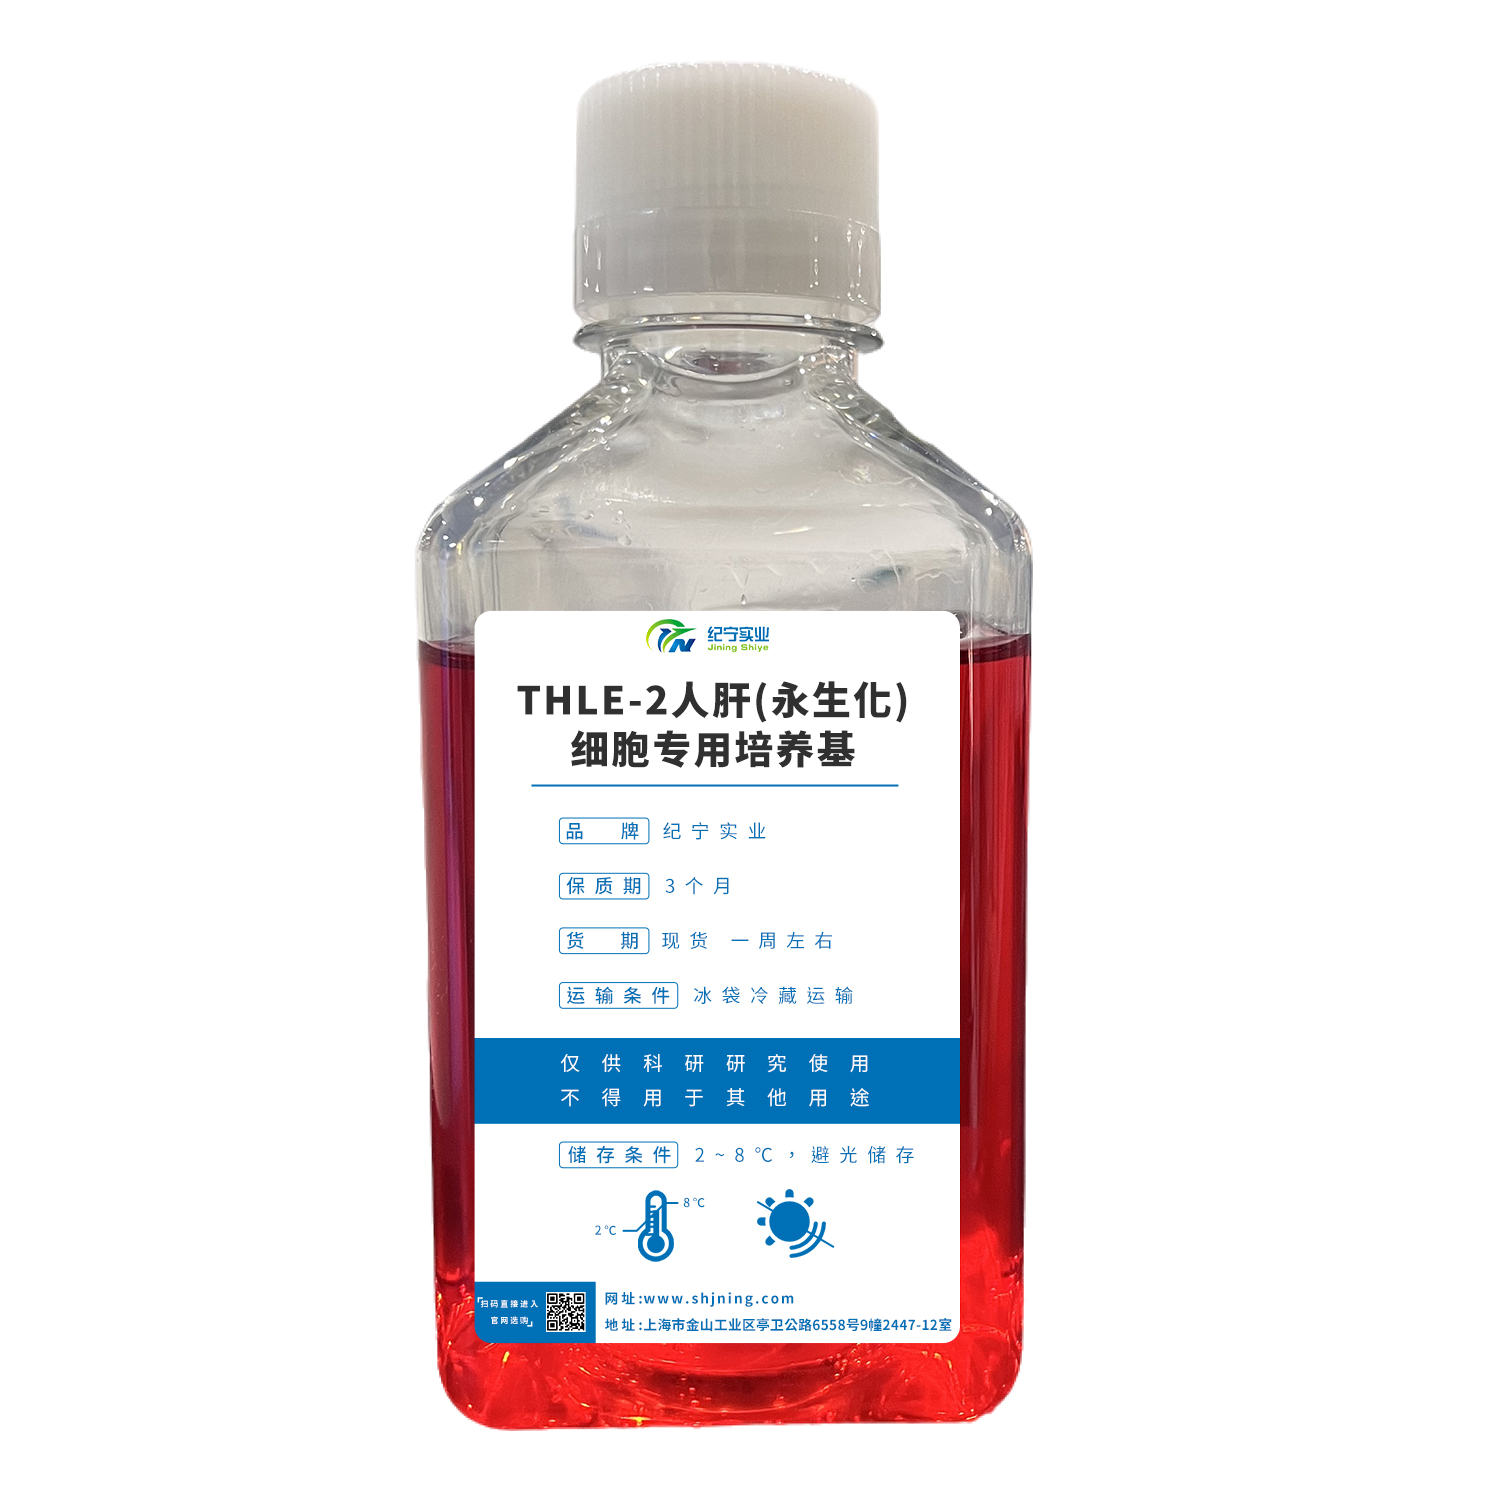 THLE-2人肝(永生化)细胞专用培养基